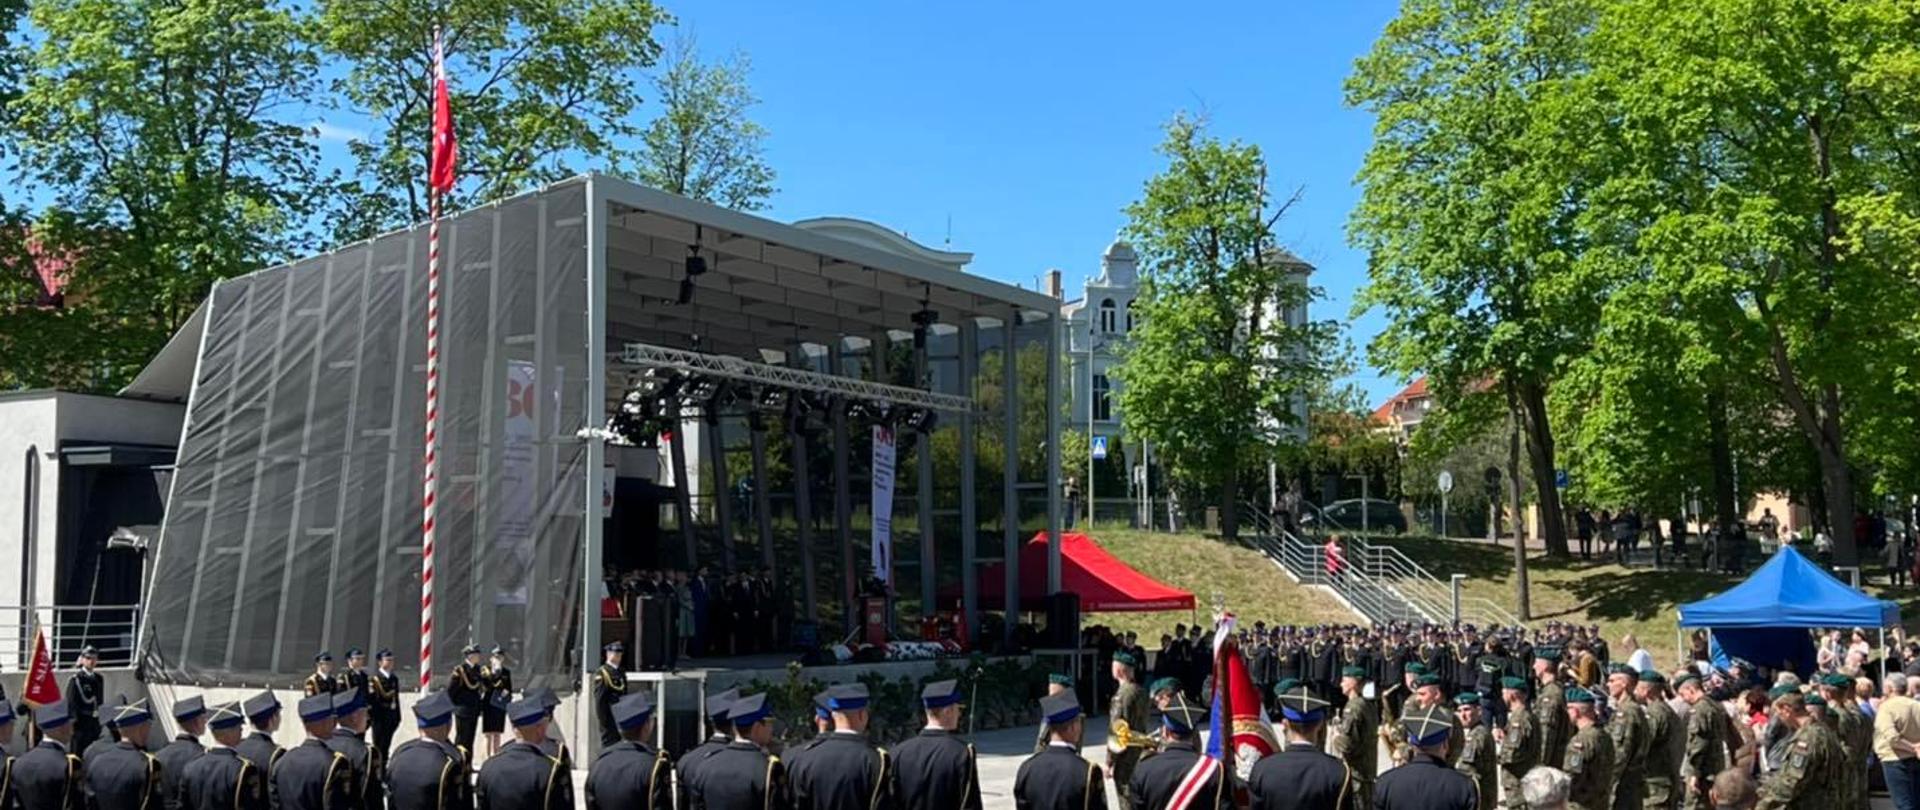 Pododdziały PSP oraz OSP widoczne przed sceną amfiteatru w Łobzie, na zdjęciu również orkiestra wojskowa. Widoczny masz flagowy z wciągniętą flagą.